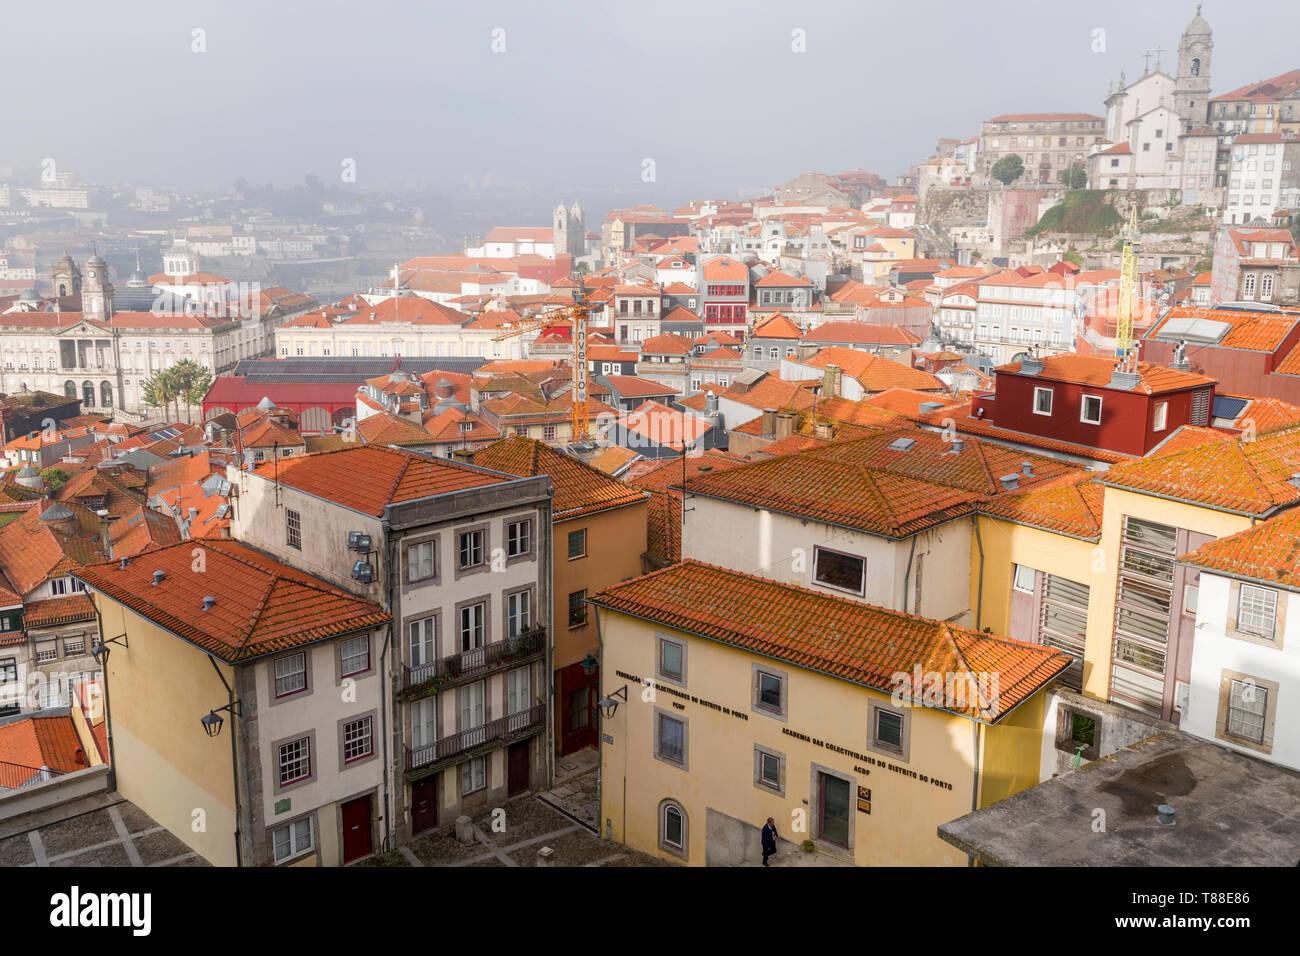 Vieille ville de Porto. Vue de plaza en face de la cathédrale de Porto. Porto, Portugal Banque D'Images